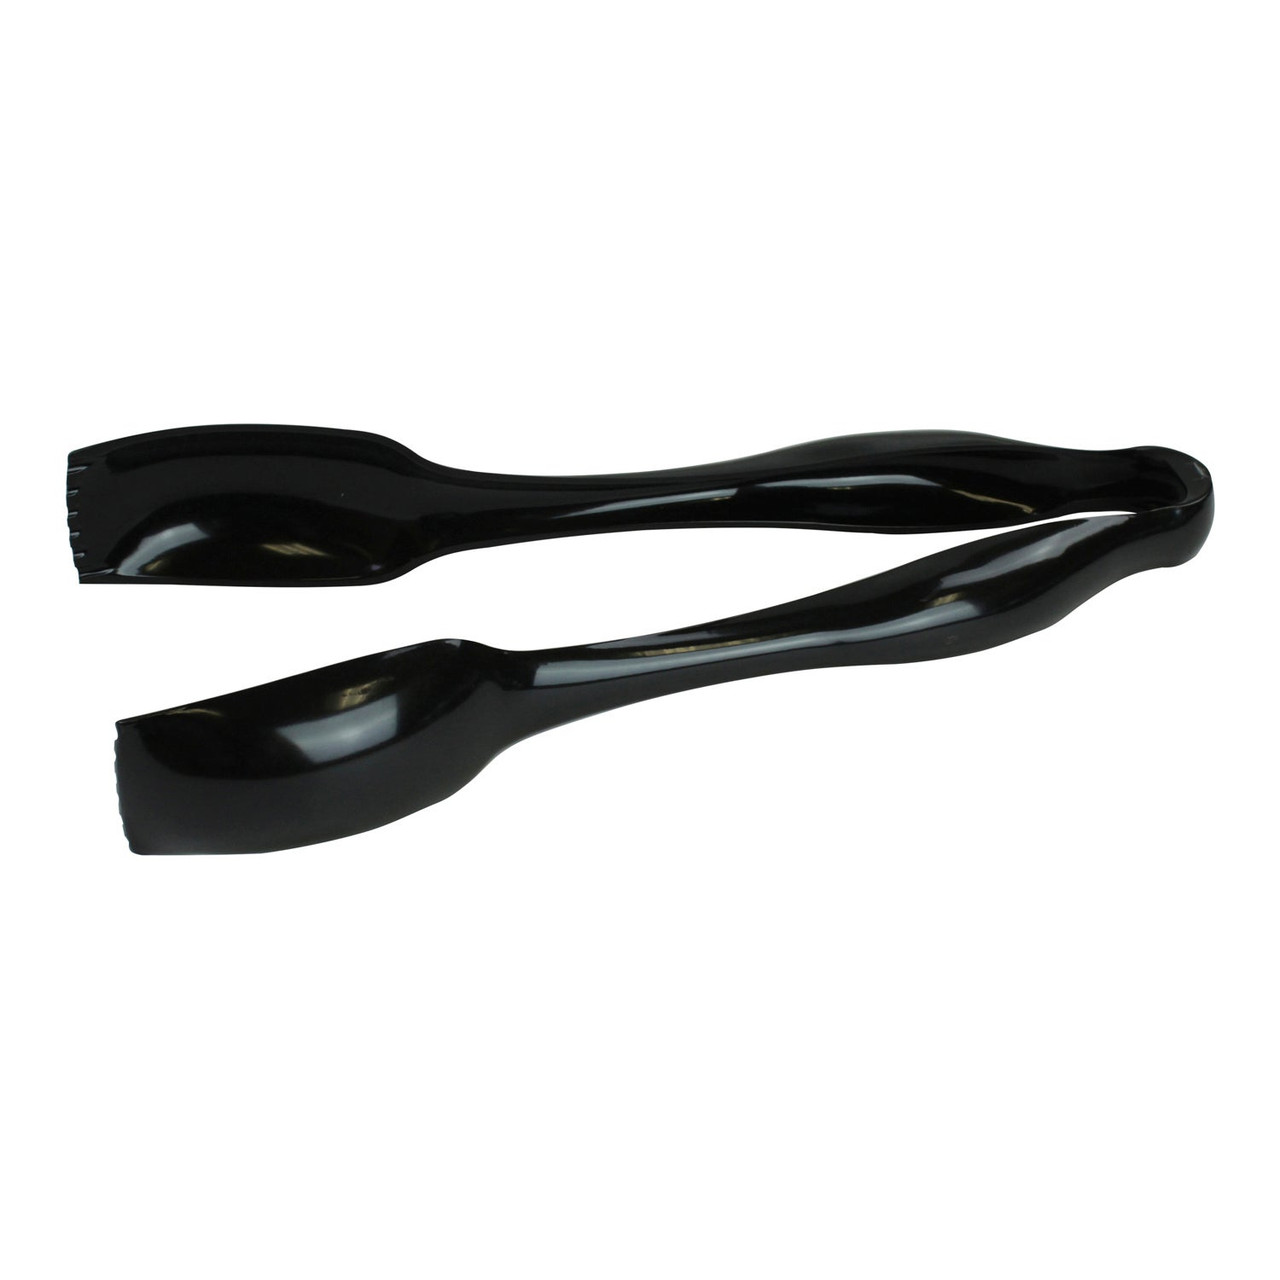 Sabert Cutlery Tongs, S 10In Black Plastic | 36UN/Unit, 1 Unit/Case